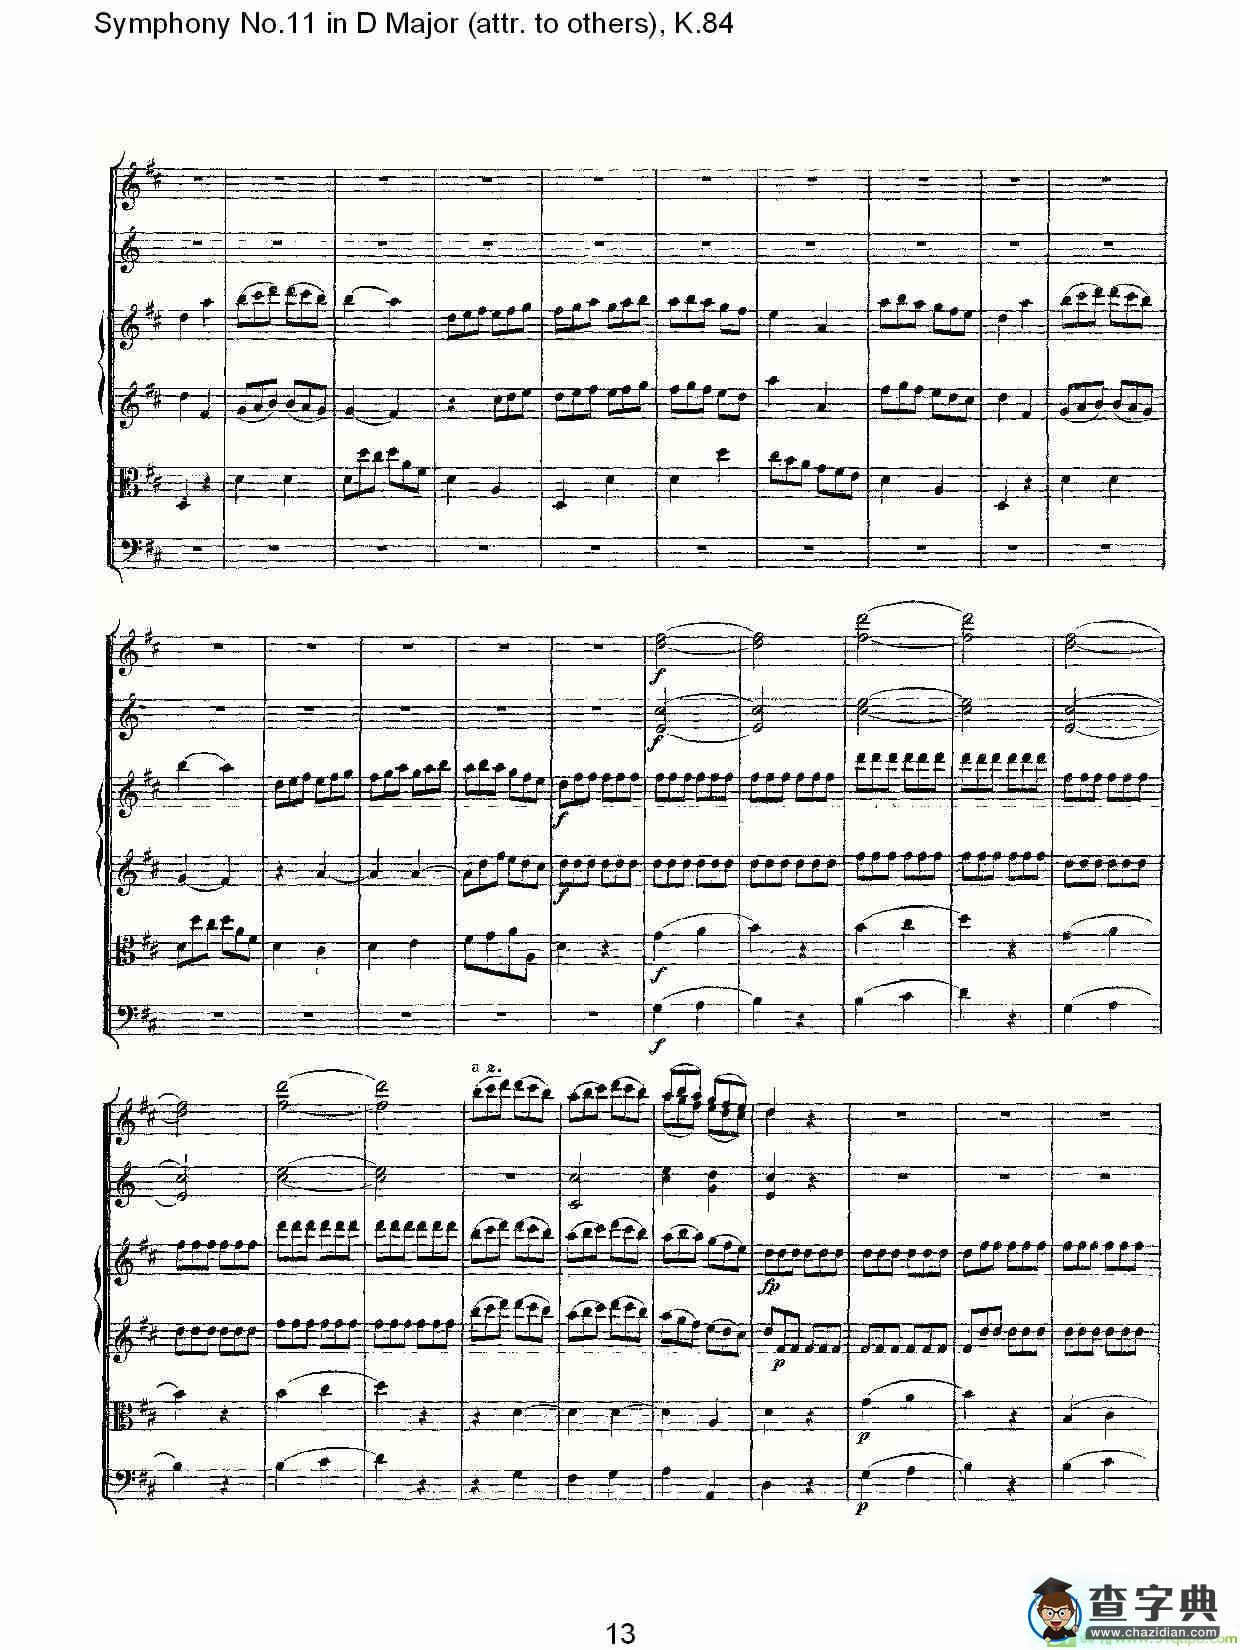 Symphony No.11 in D Major简谱